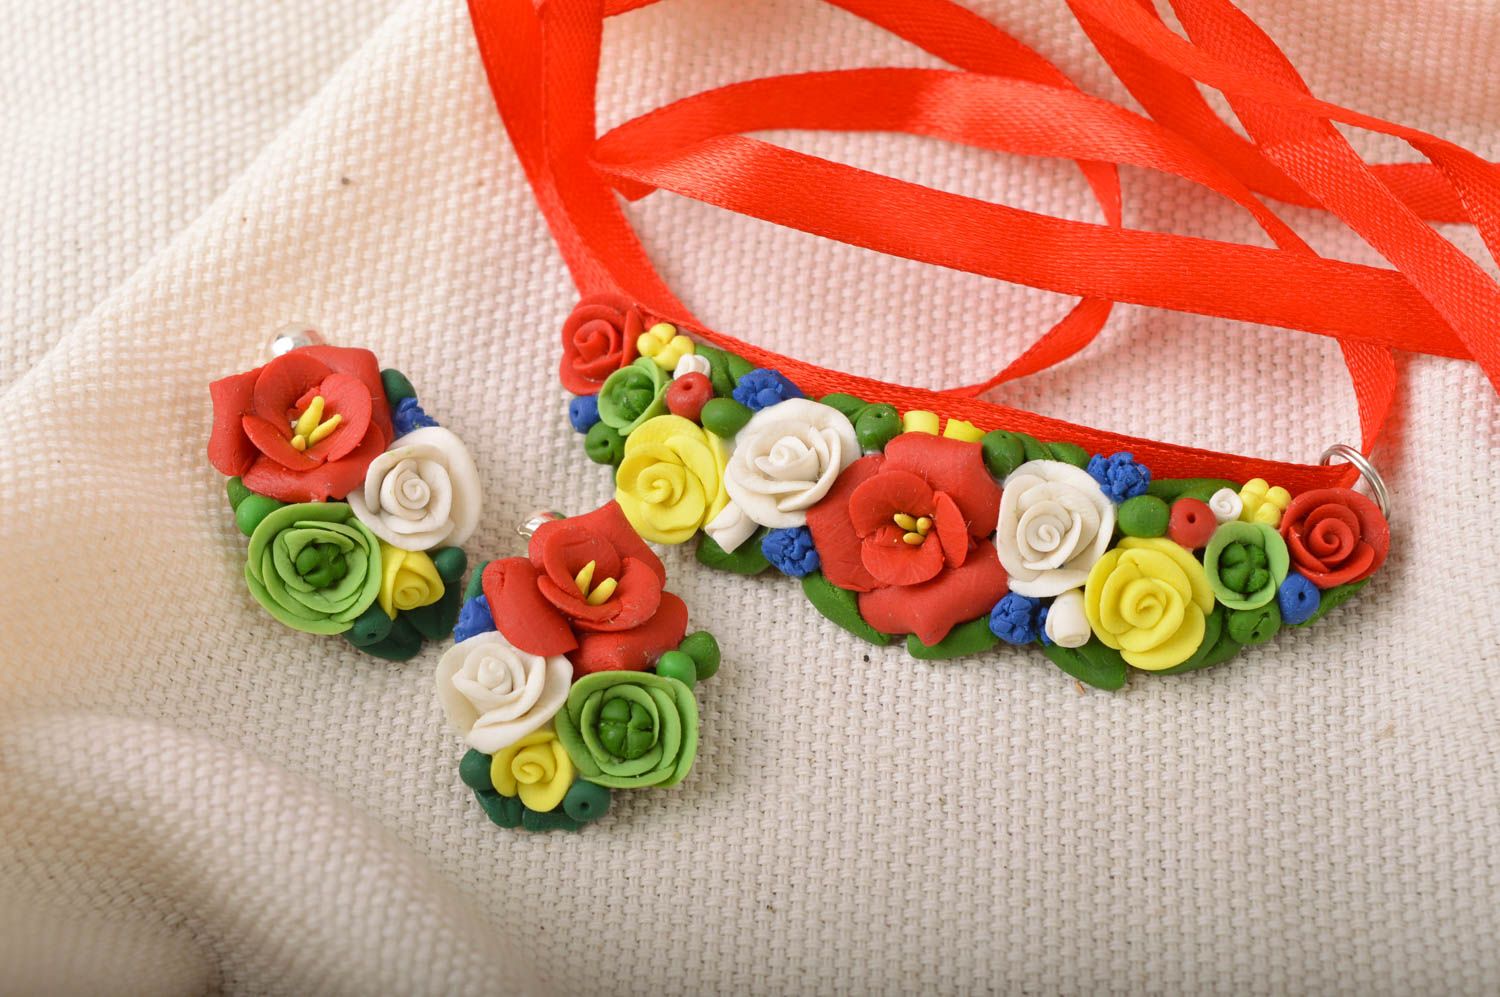 Boucles d'oreilles et pendentif fleurs en porcelaine froide faits main sur ruban photo 1